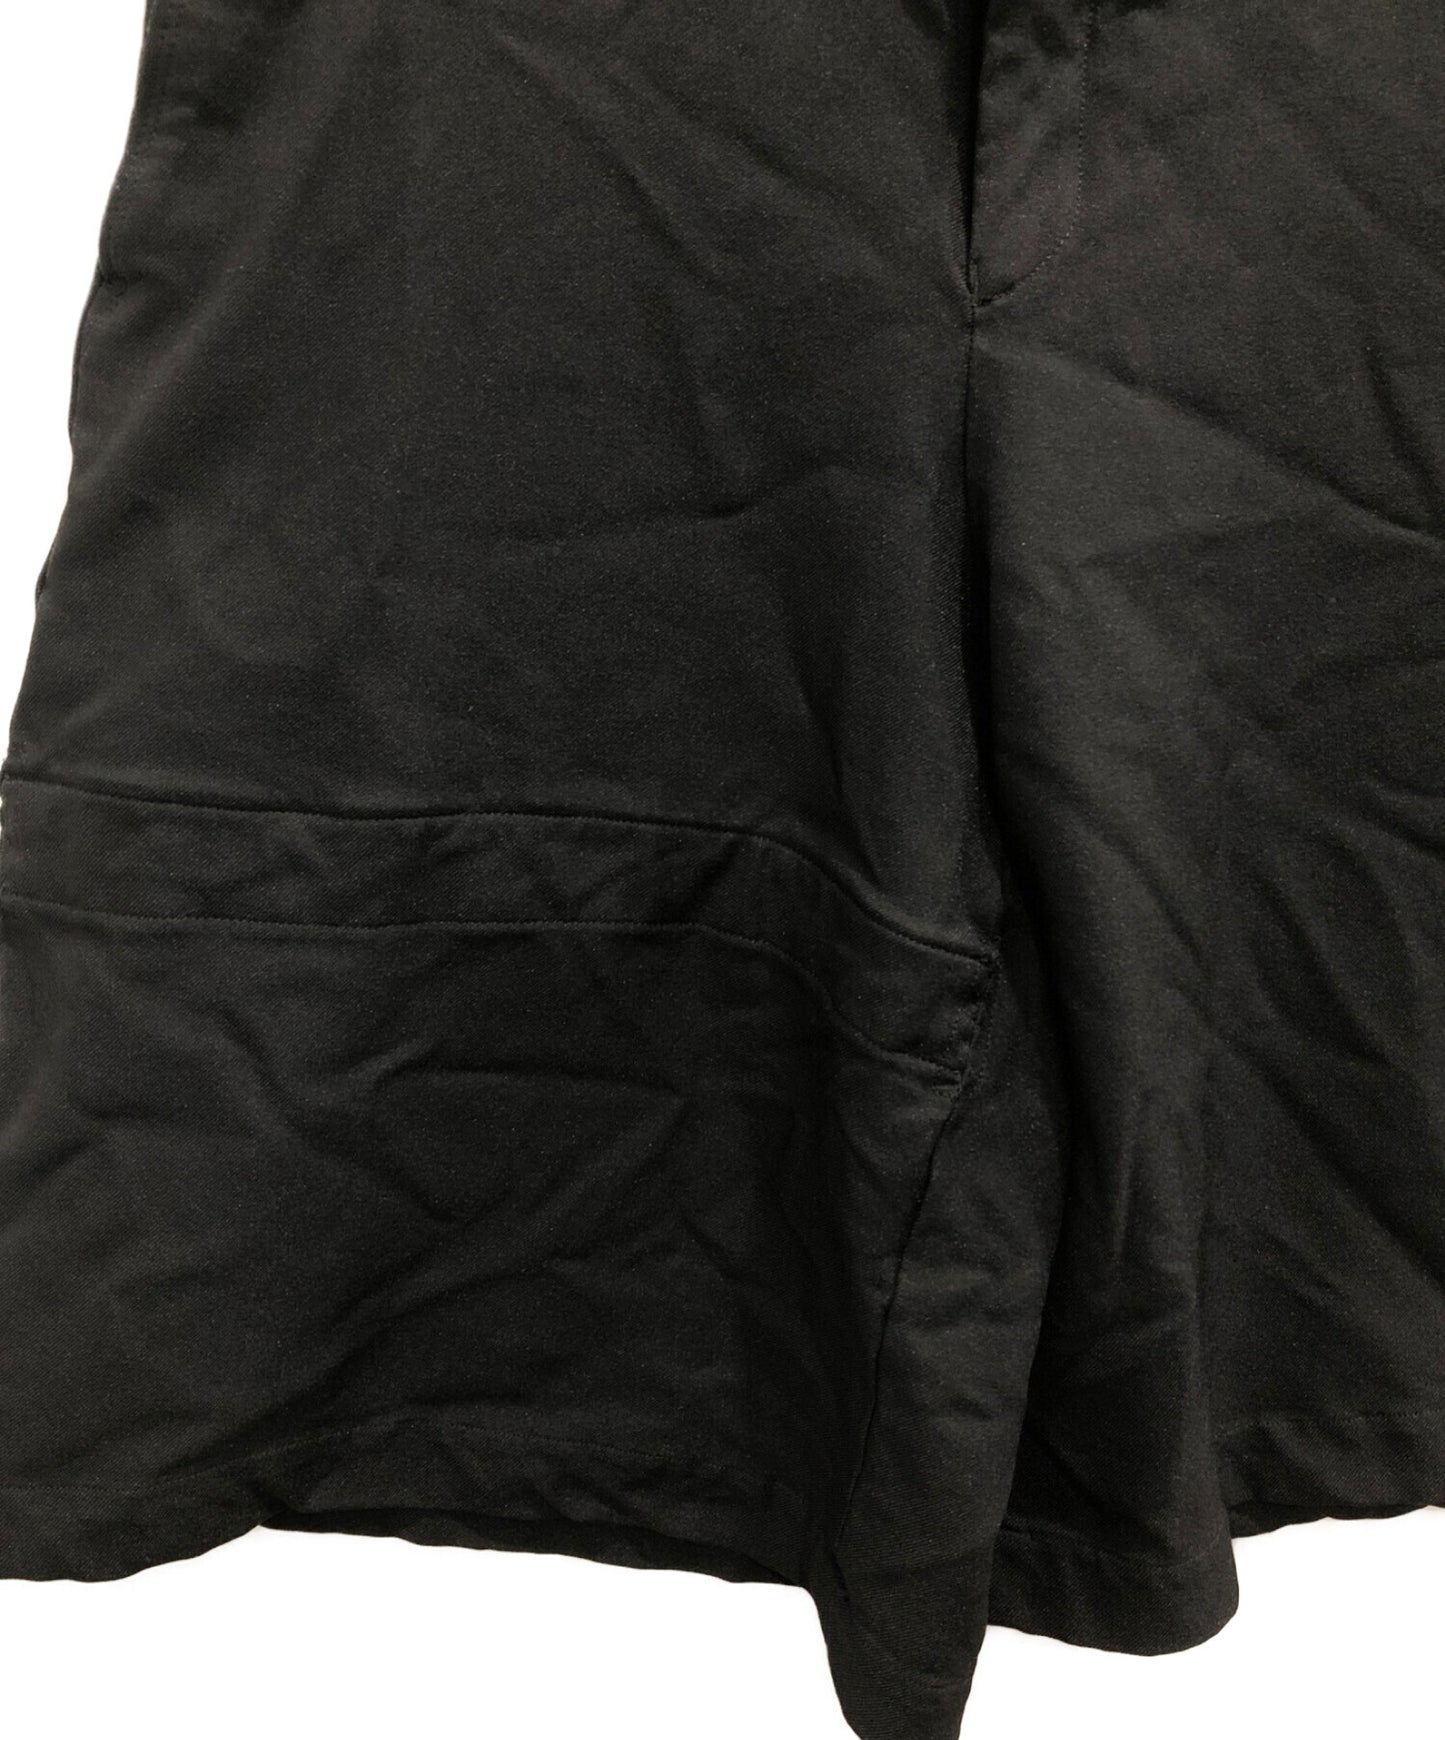 Black Comme des Garcons Polyester Half Pants 1p-P016